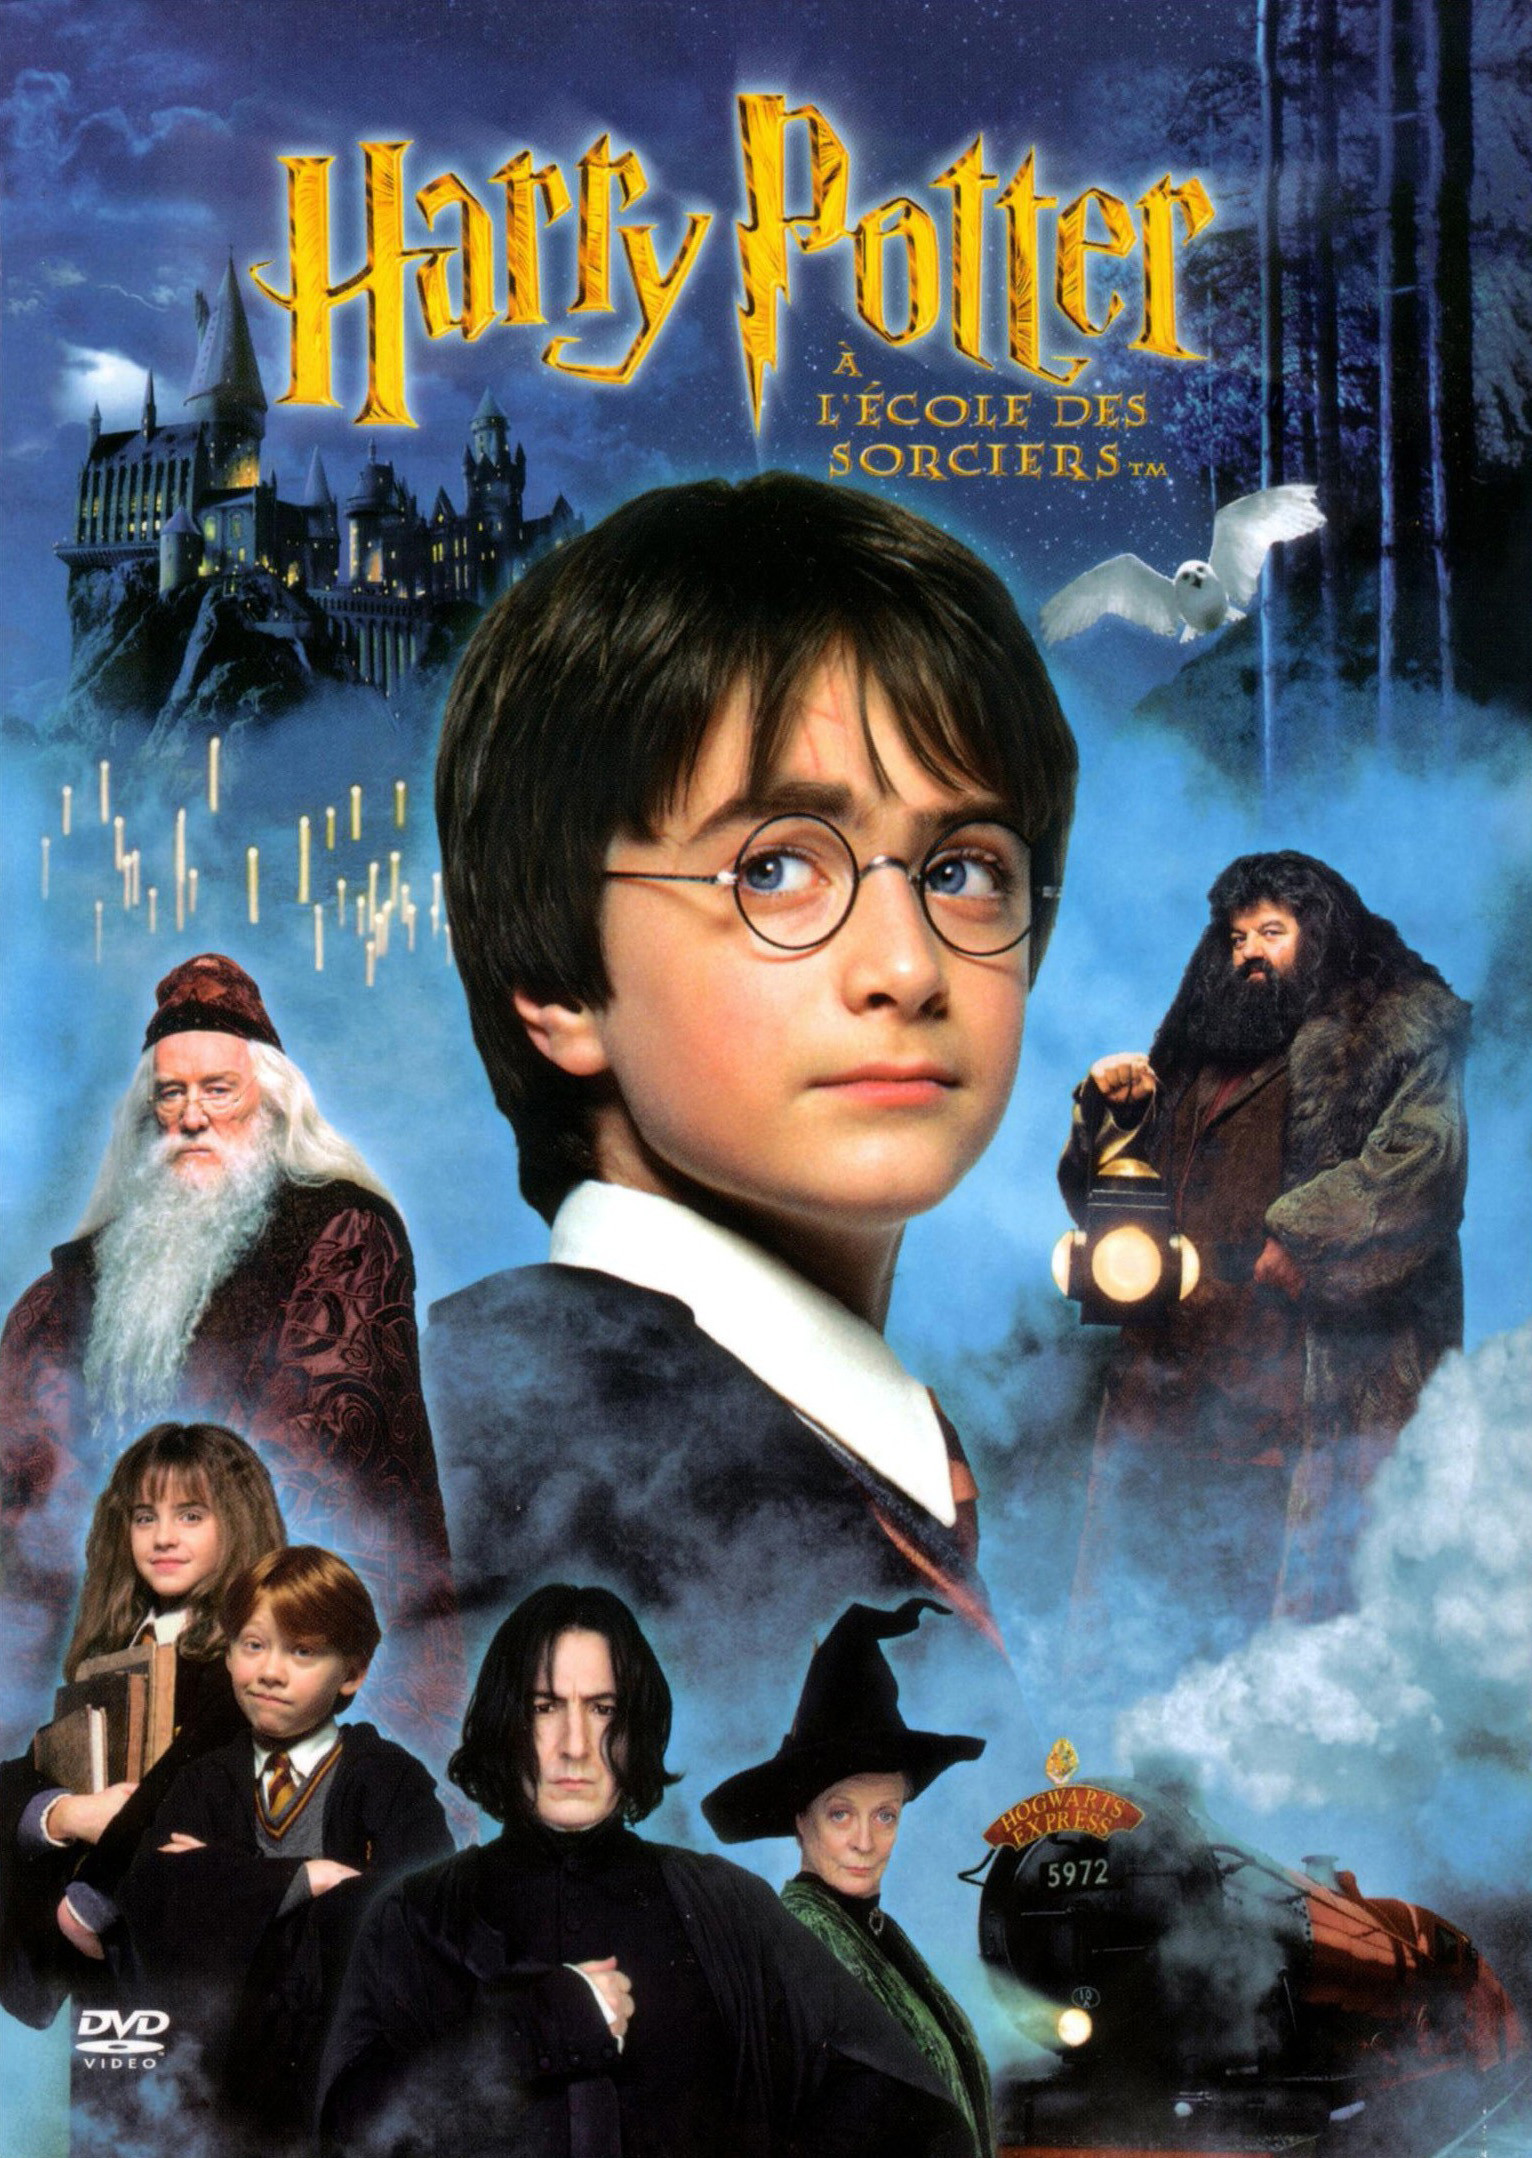 Harry Potter à l'école des sorciers Harry Potter and the Philosopher's